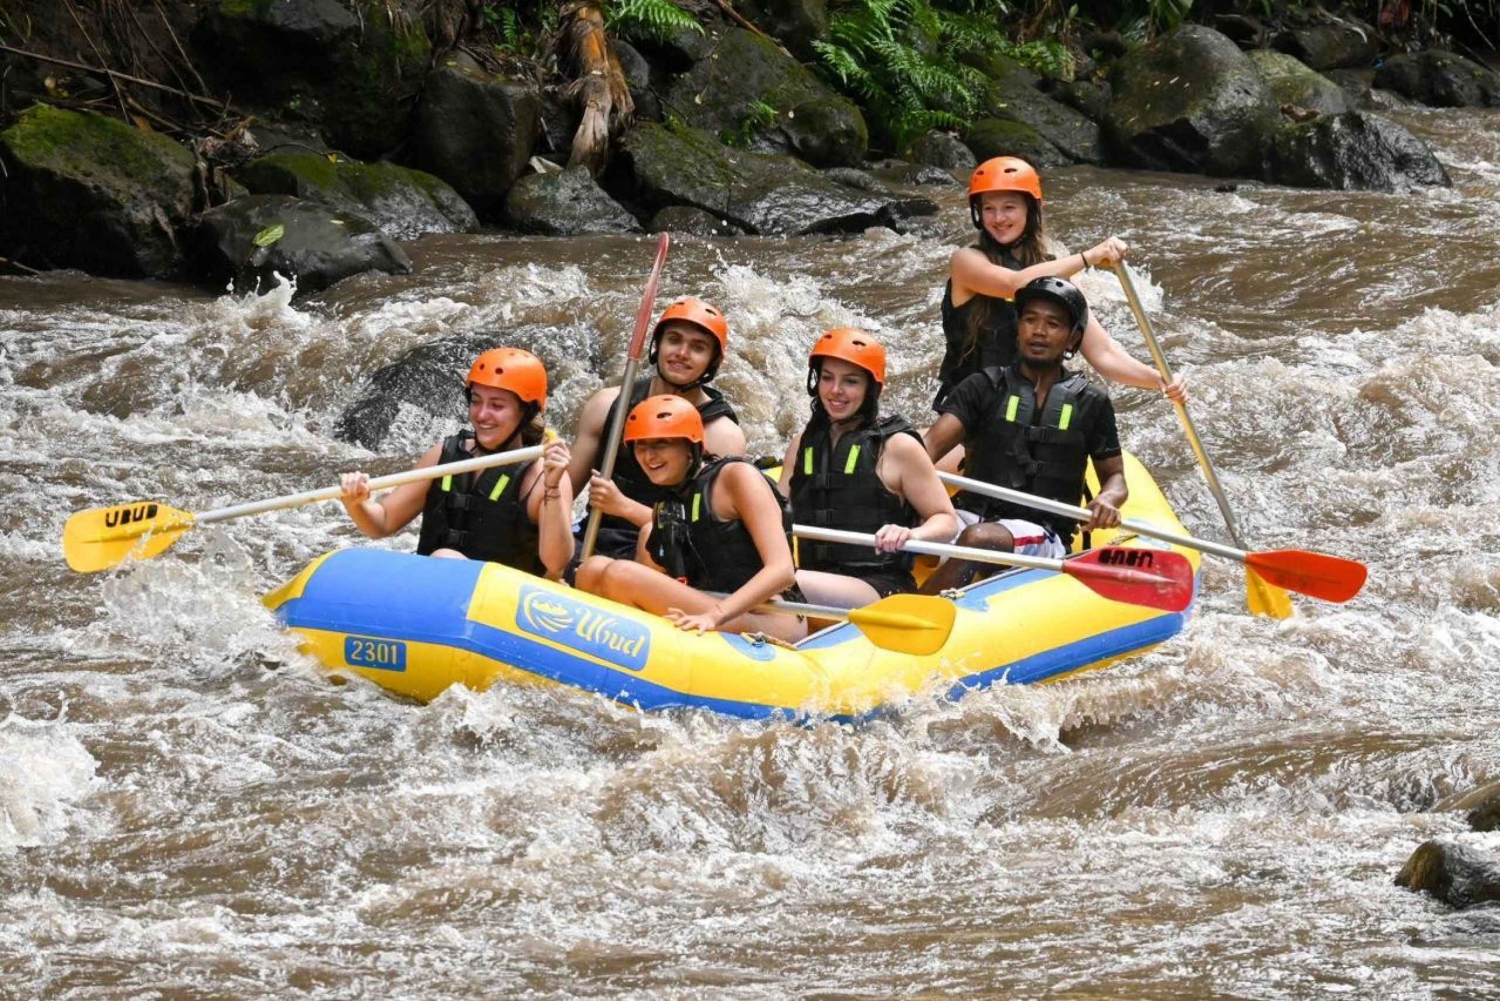 Atv Adventure and Ubud Rafting